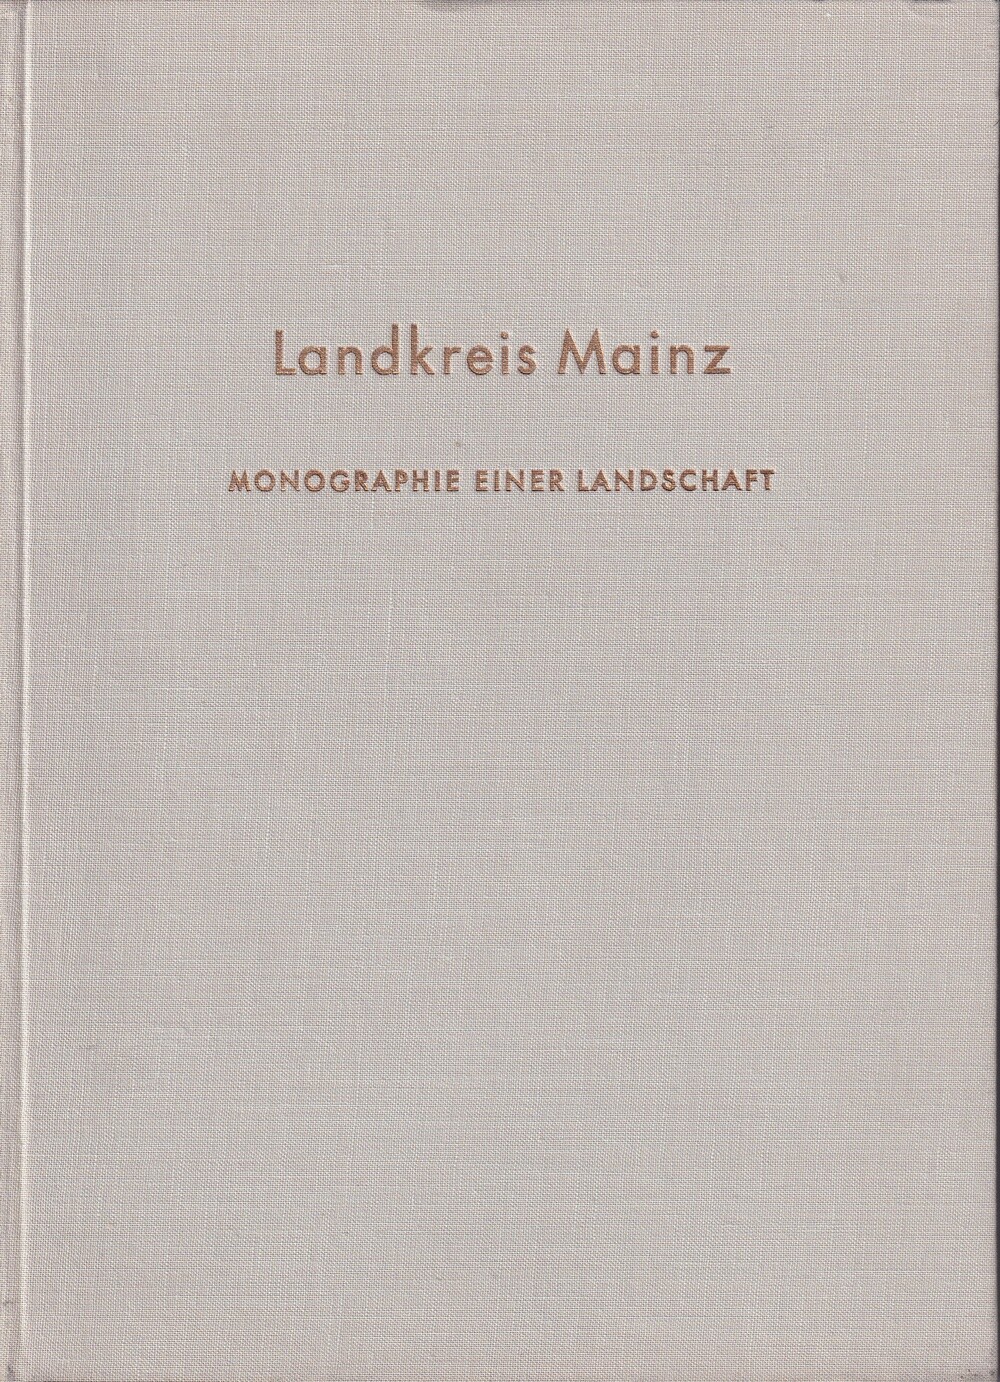 Landkreis Mainz, Monographie einer Landschaft (Kulturverein Guntersblum CC BY-NC-SA)